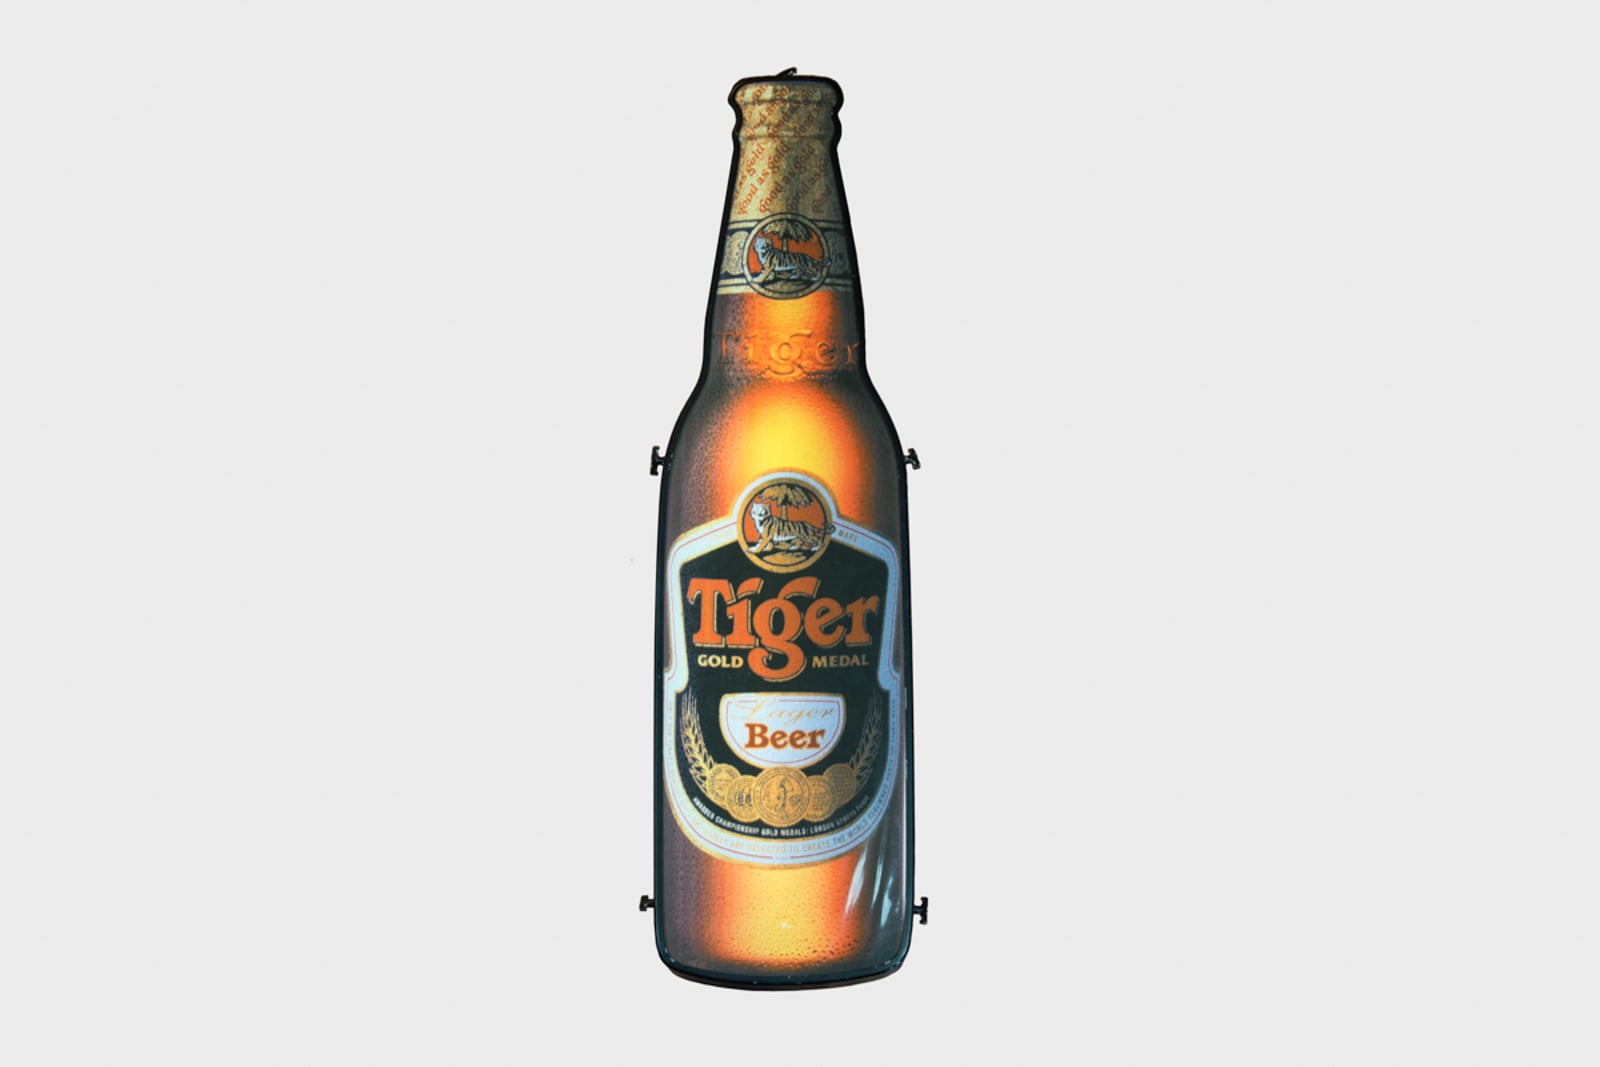 Tiger Beer Bottle Light Box Equipment